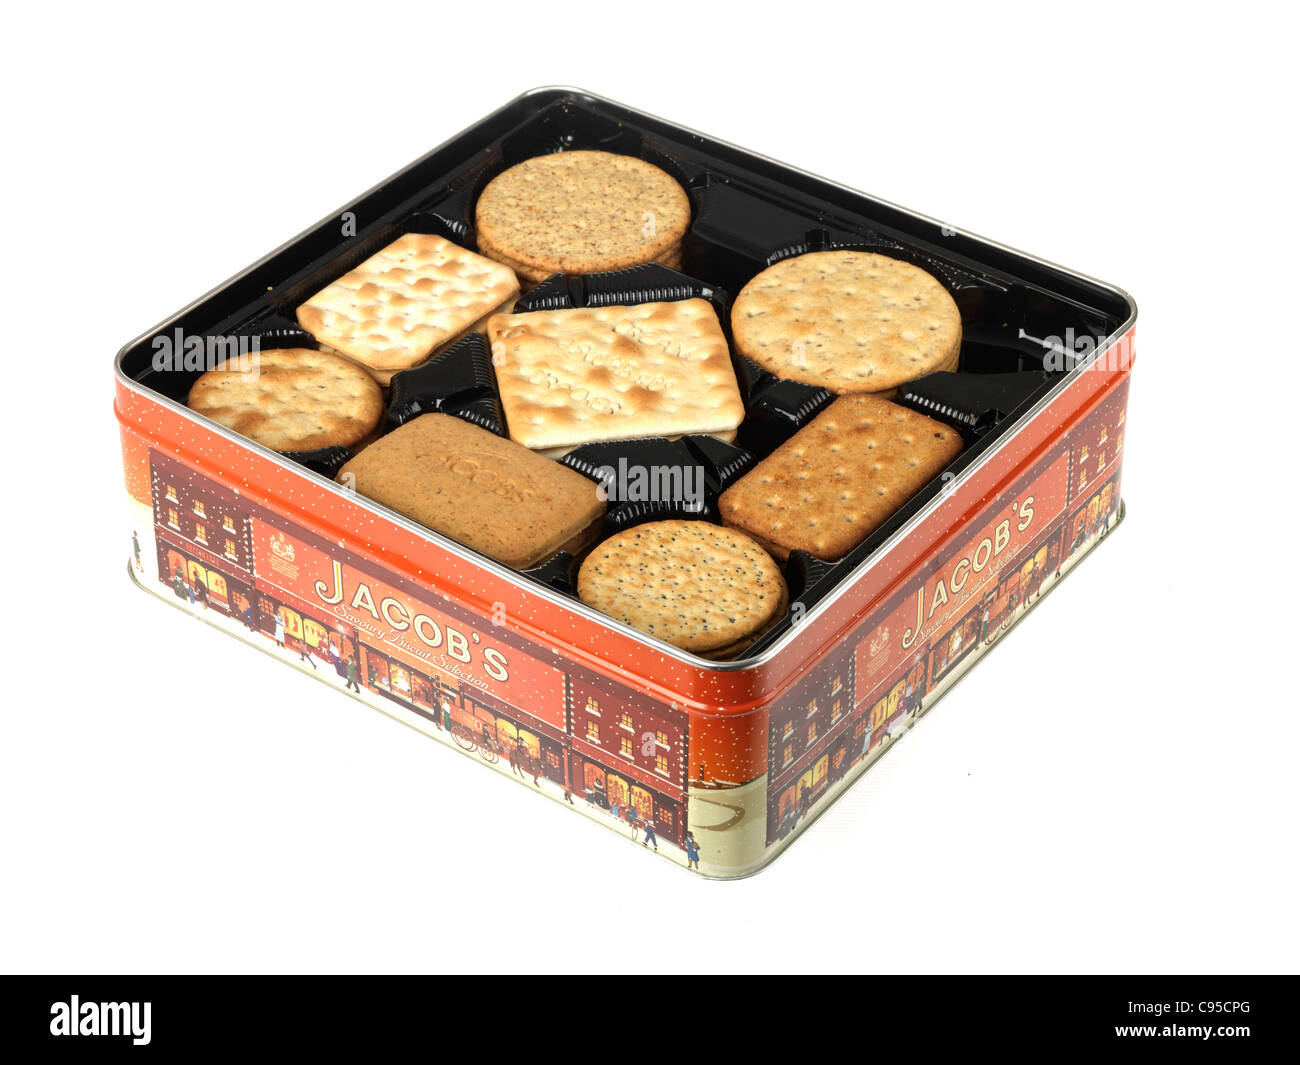 Boîte de biscuits de marque Jacob's Biscuit ou isolés de sélection sur un fond blanc avec un chemin de détourage et aucun peuple Banque D'Images